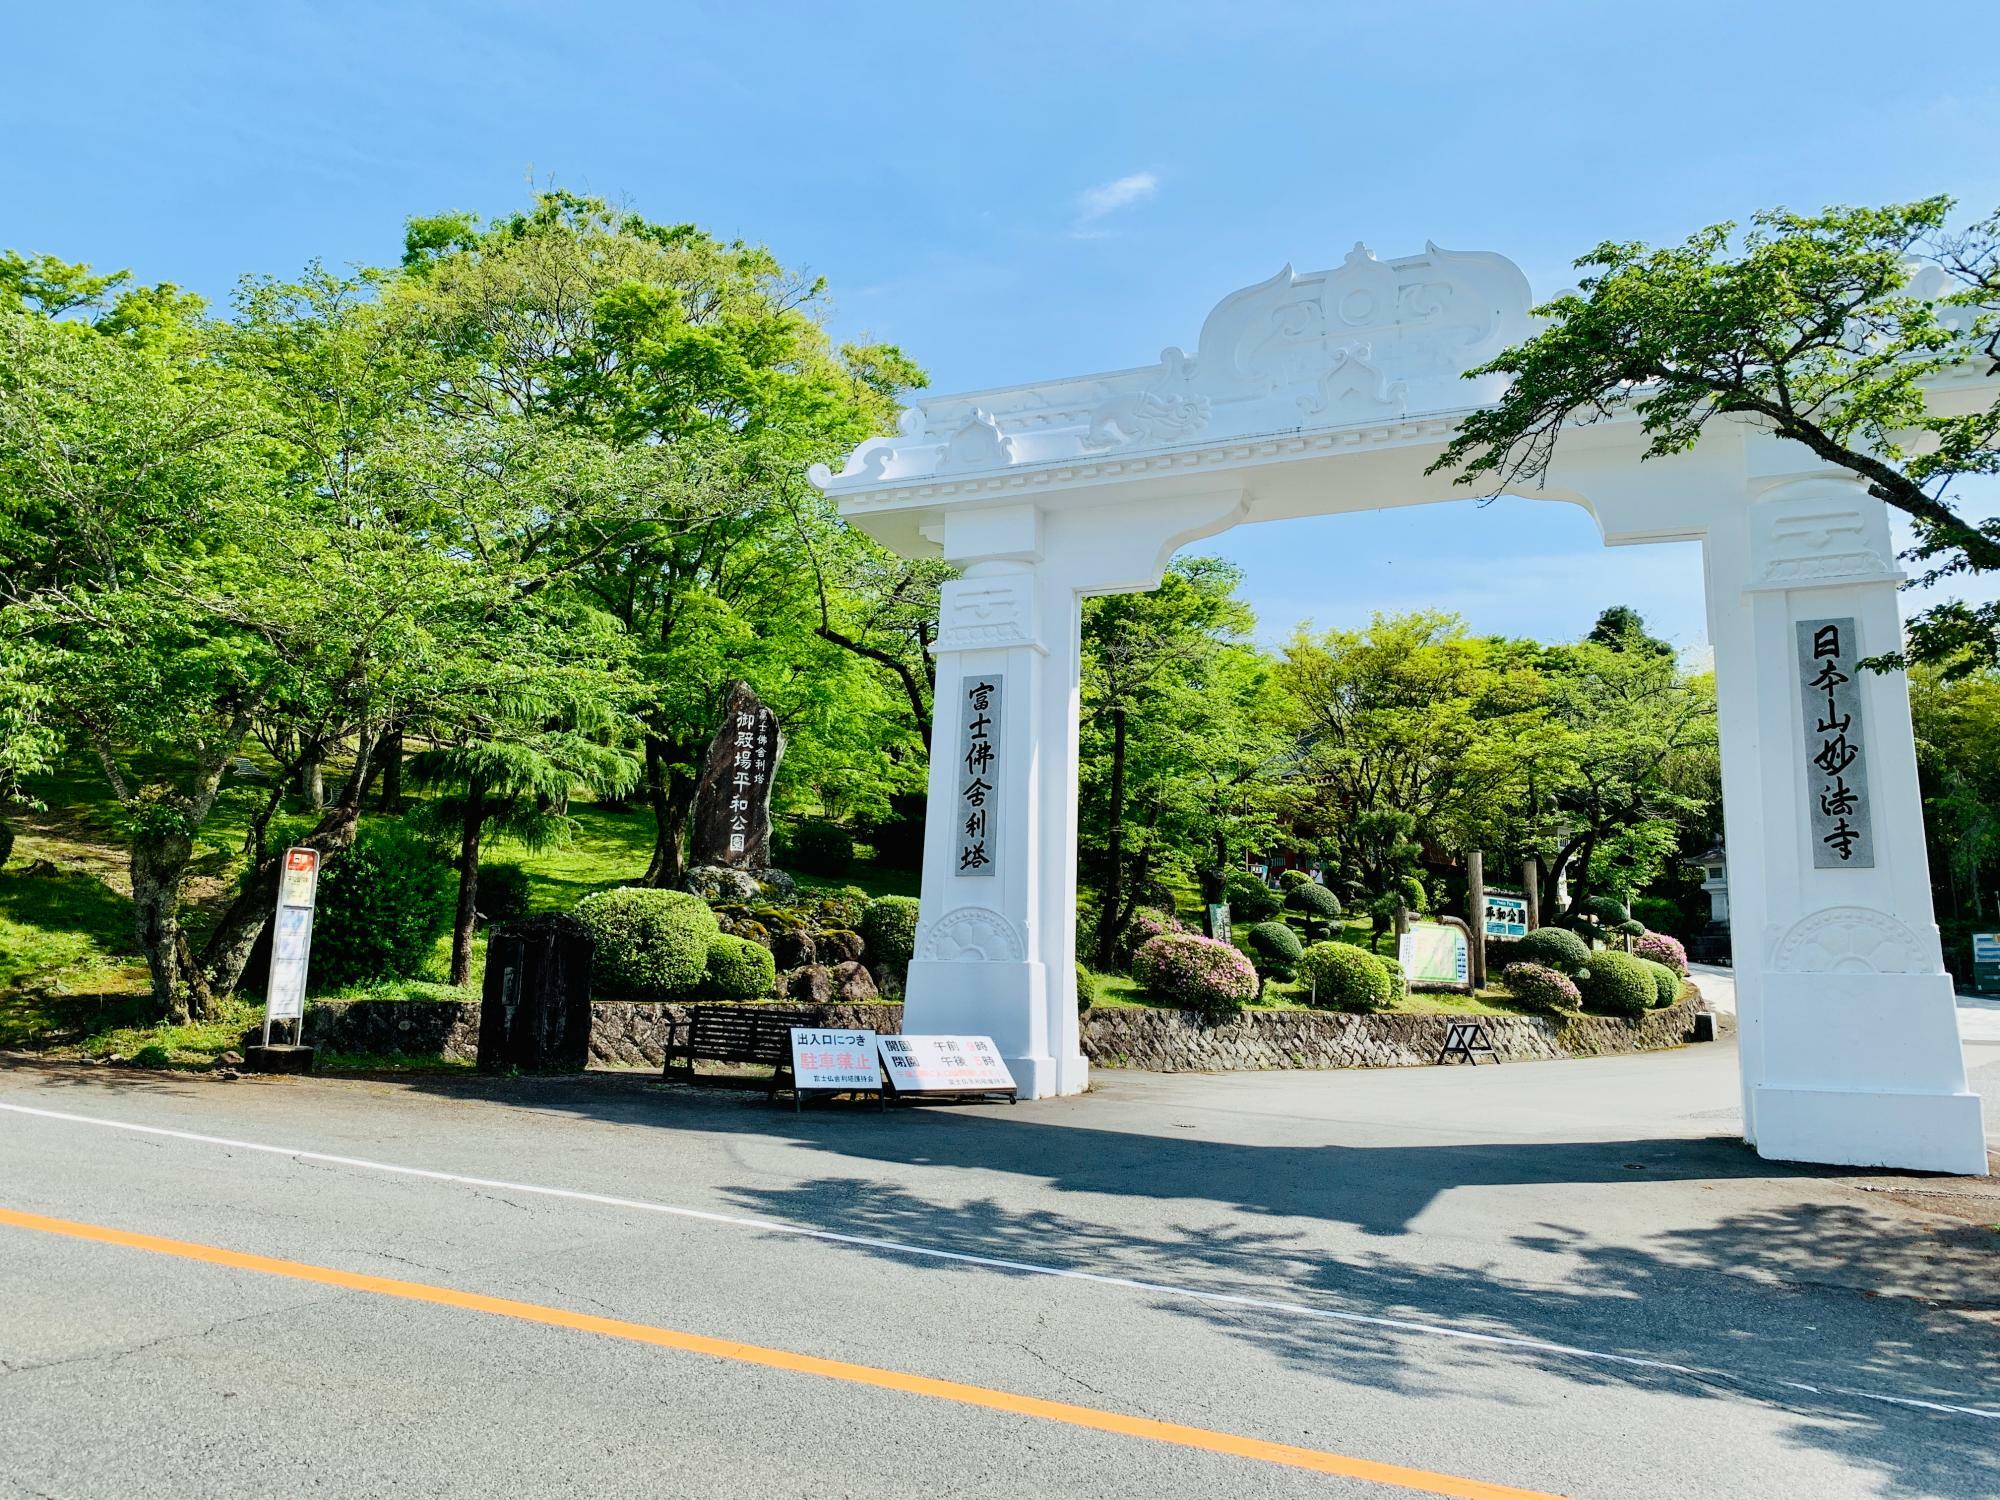 道路から見た富士仏舎利塔平和公園入口